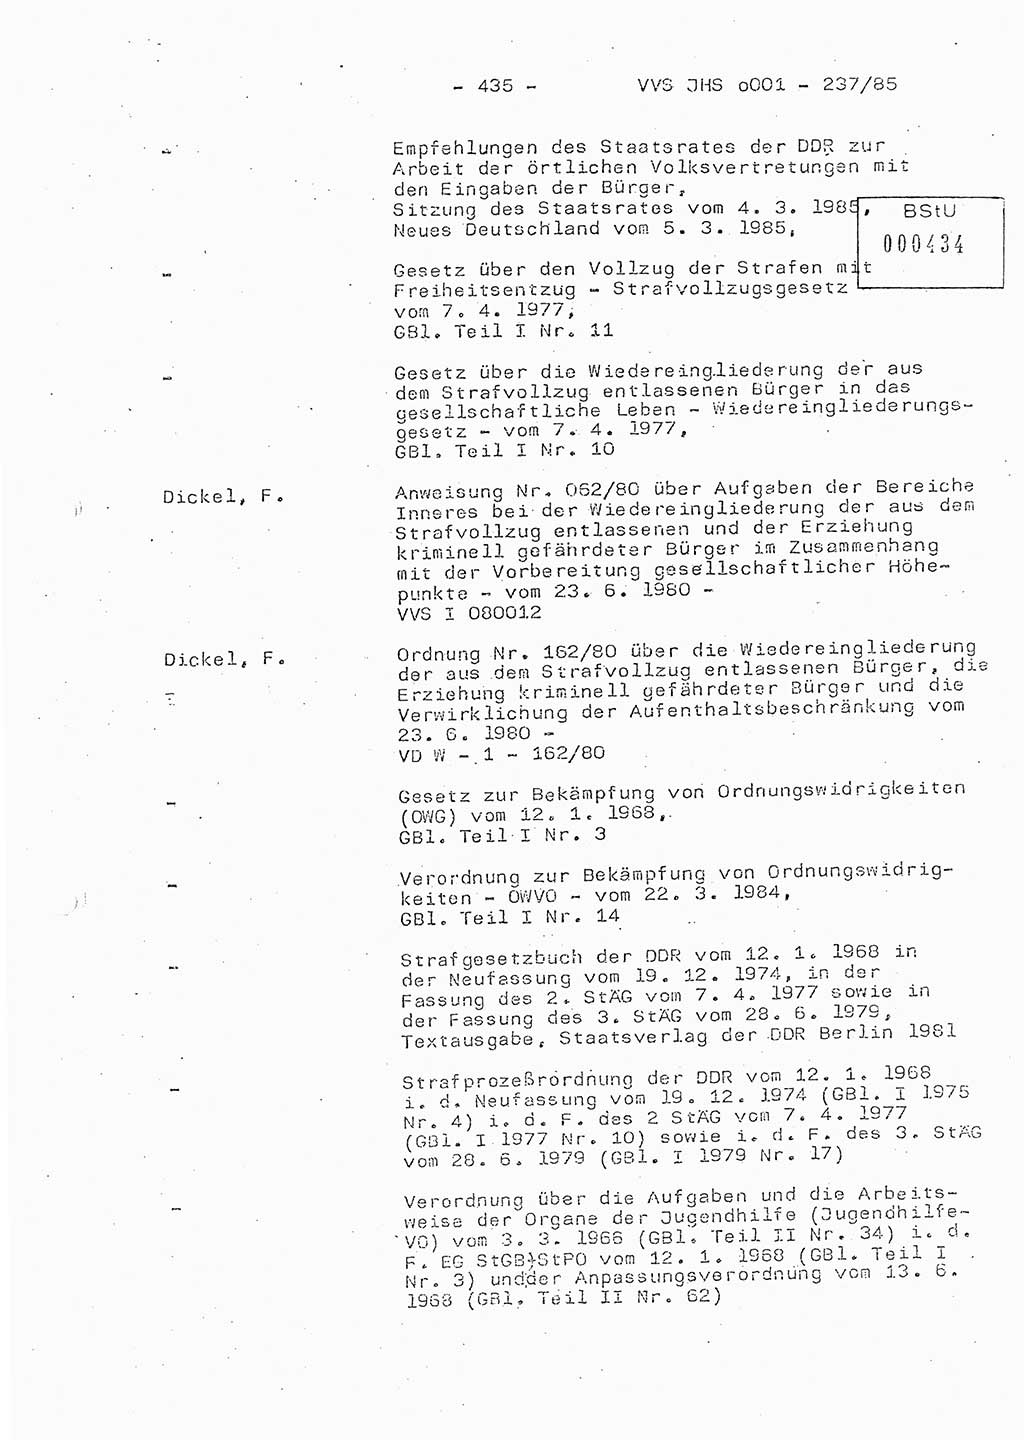 Dissertation Oberstleutnant Peter Jakulski (JHS), Oberstleutnat Christian Rudolph (HA Ⅸ), Major Horst Böttger (ZMD), Major Wolfgang Grüneberg (JHS), Major Albert Meutsch (JHS), Ministerium für Staatssicherheit (MfS) [Deutsche Demokratische Republik (DDR)], Juristische Hochschule (JHS), Vertrauliche Verschlußsache (VVS) o001-237/85, Potsdam 1985, Seite 435 (Diss. MfS DDR JHS VVS o001-237/85 1985, S. 435)